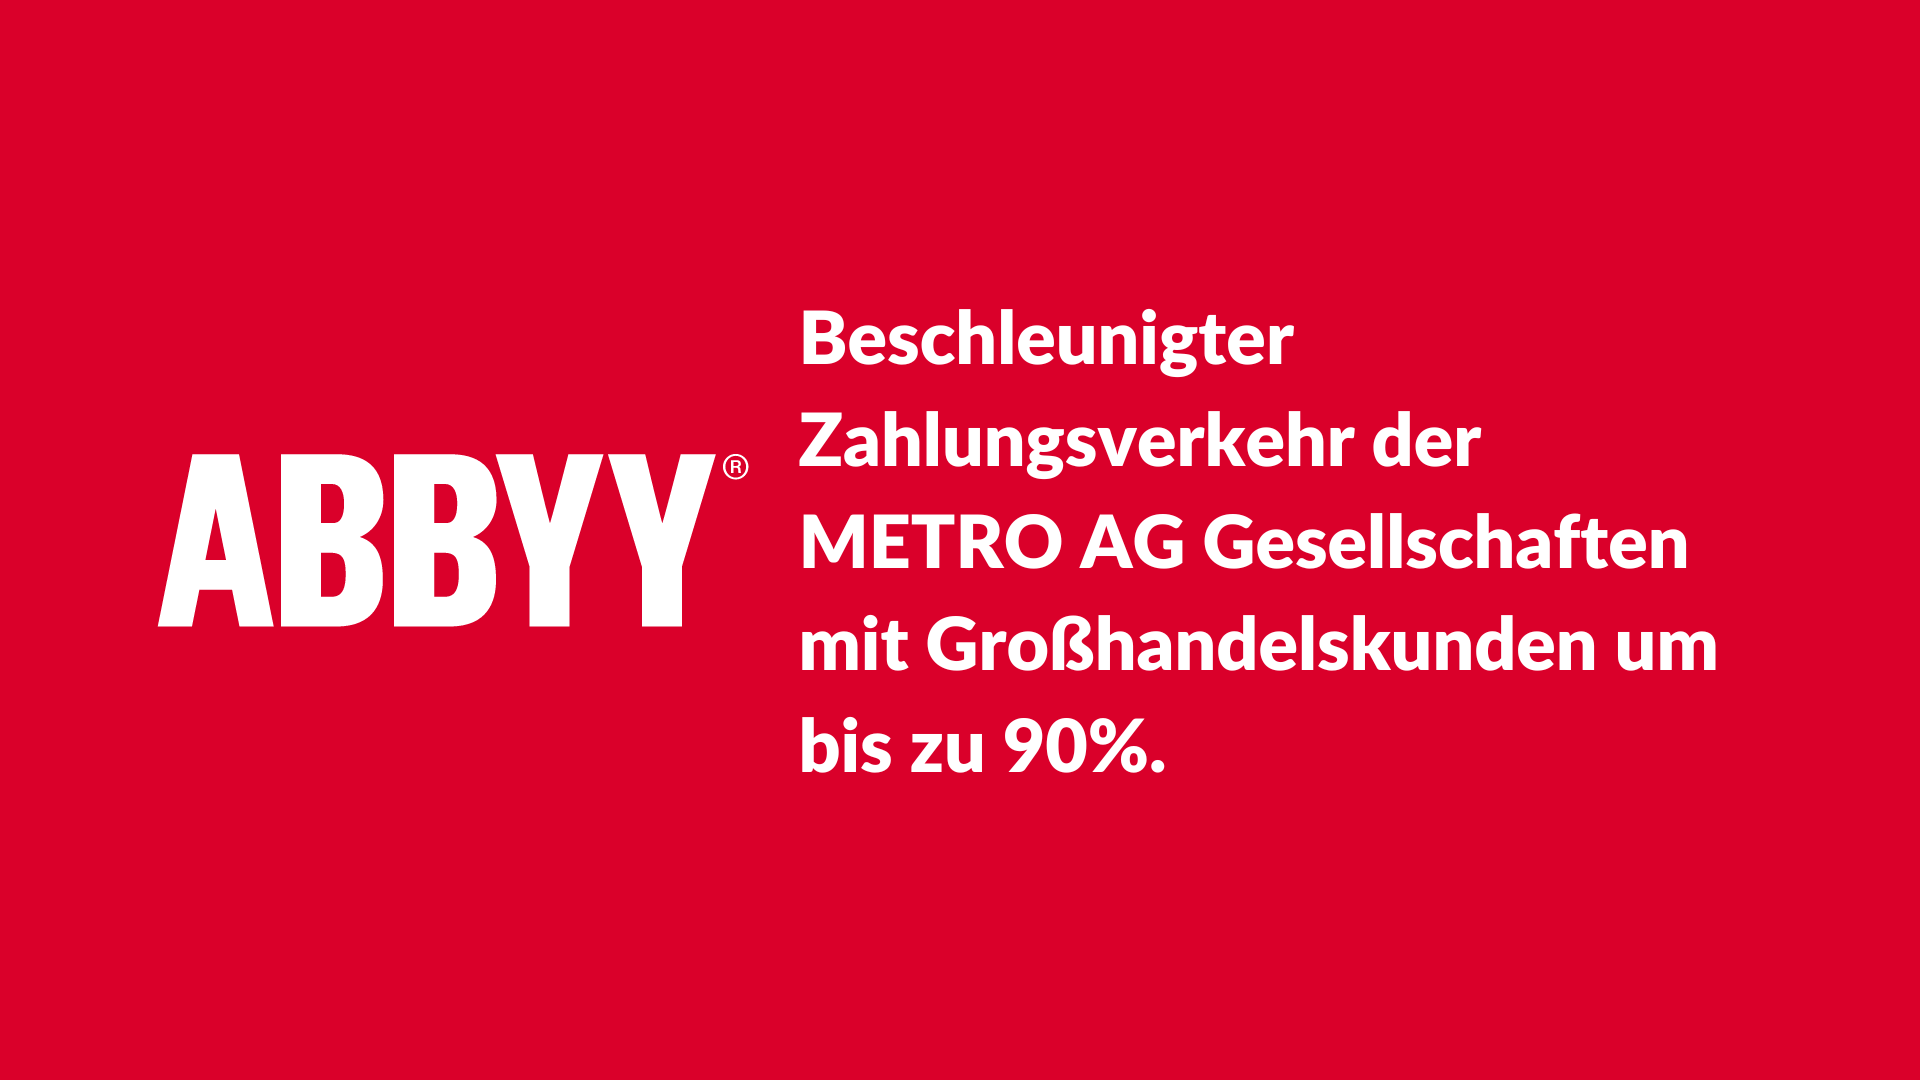 ABBYY beschleunigt den Zahlungsverkehr der METRO AG Gesellschaften mit Großhandelskunden um bis zu 90%